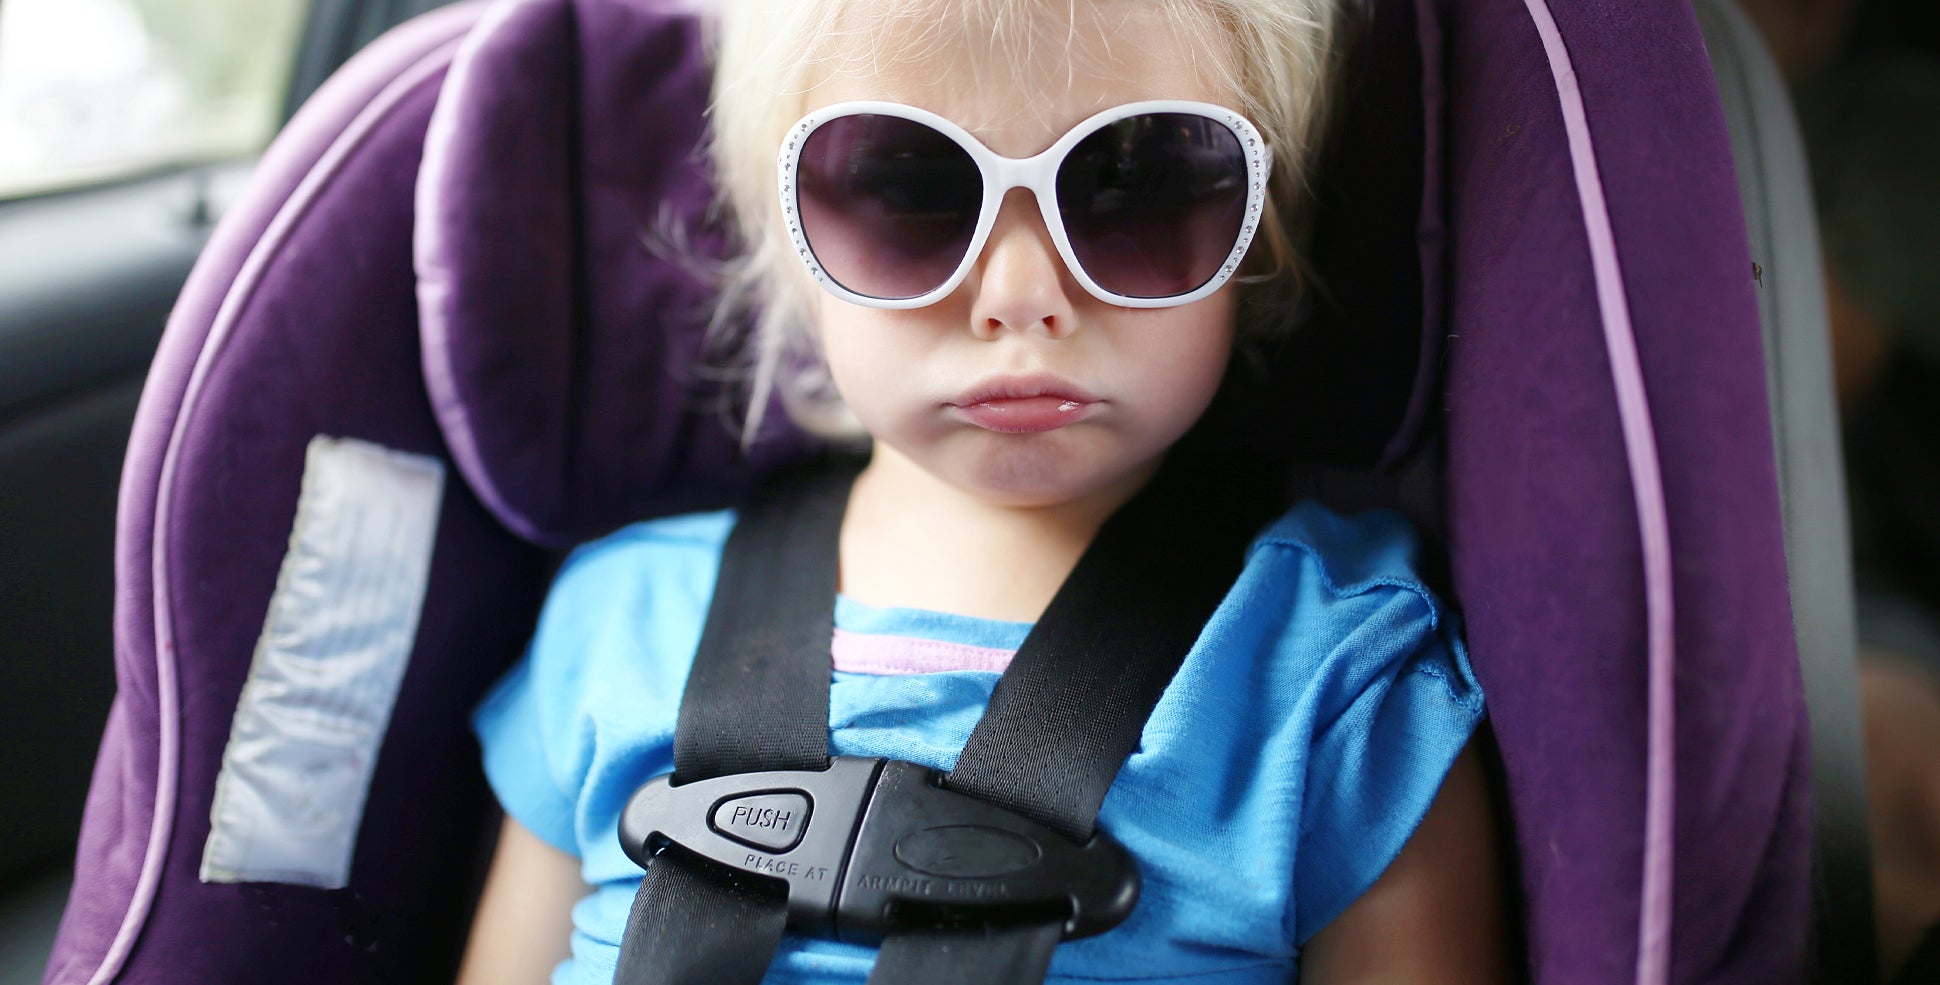 little girl in car seat meme